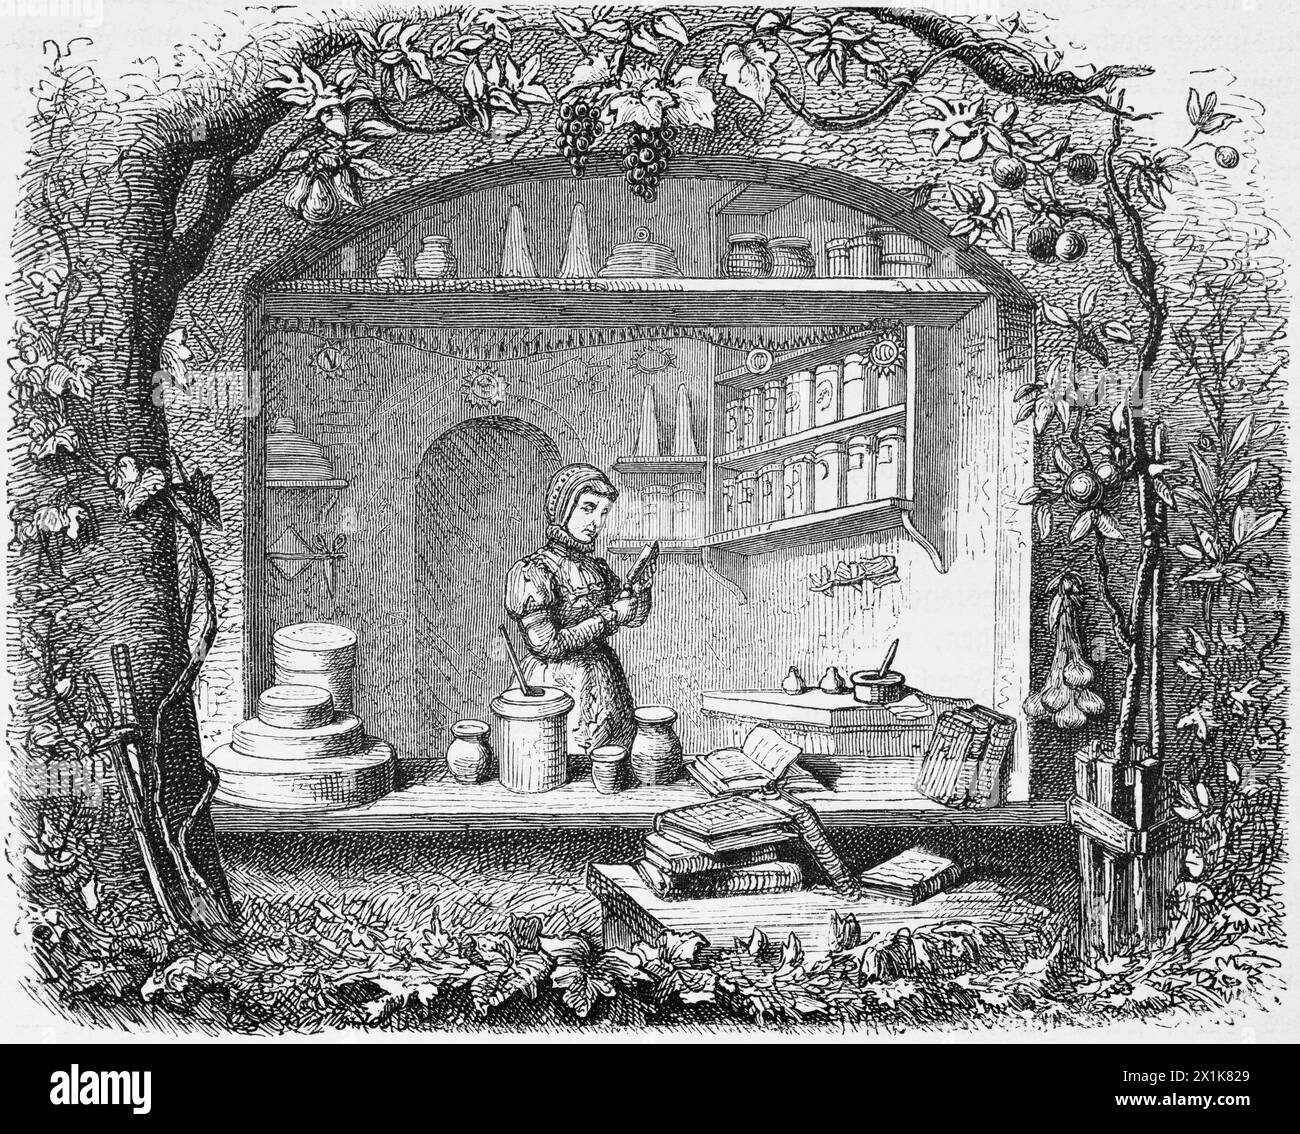 Trabajando en una farmacia principesca a finales del siglo XVI, Prusia, ilustración histórica 1880 Foto de stock